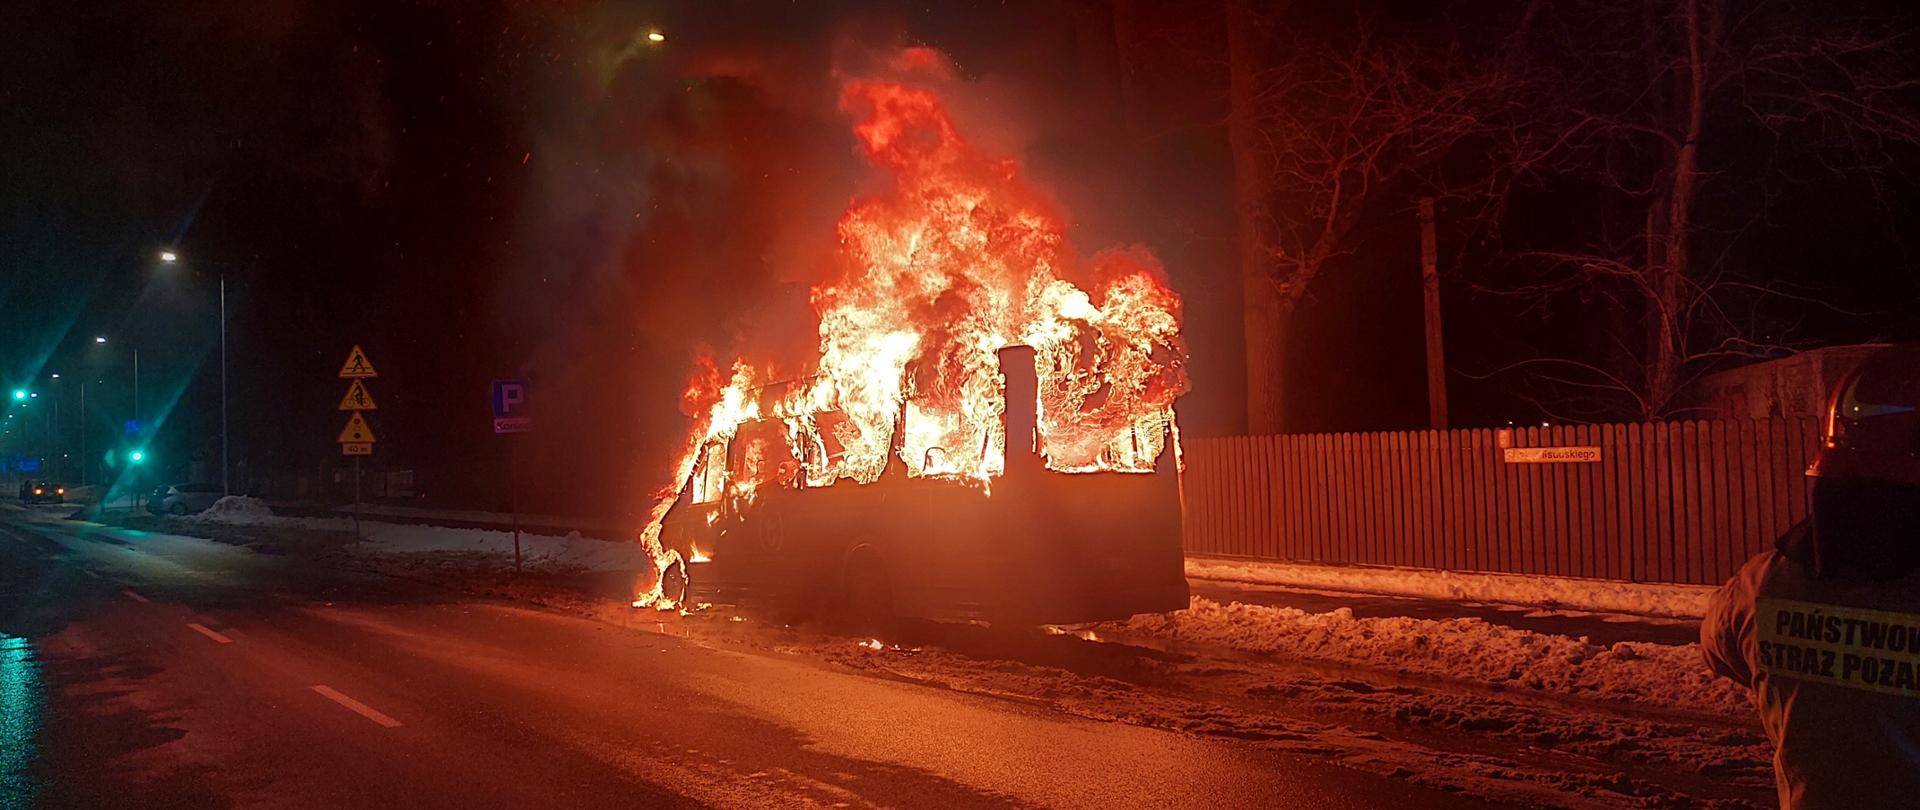 Zdjęcie przedstawia działania gaśnicze podczas pożaru autobusu. Na zdjęciu widoczny jest w pełni palący się pojazd.